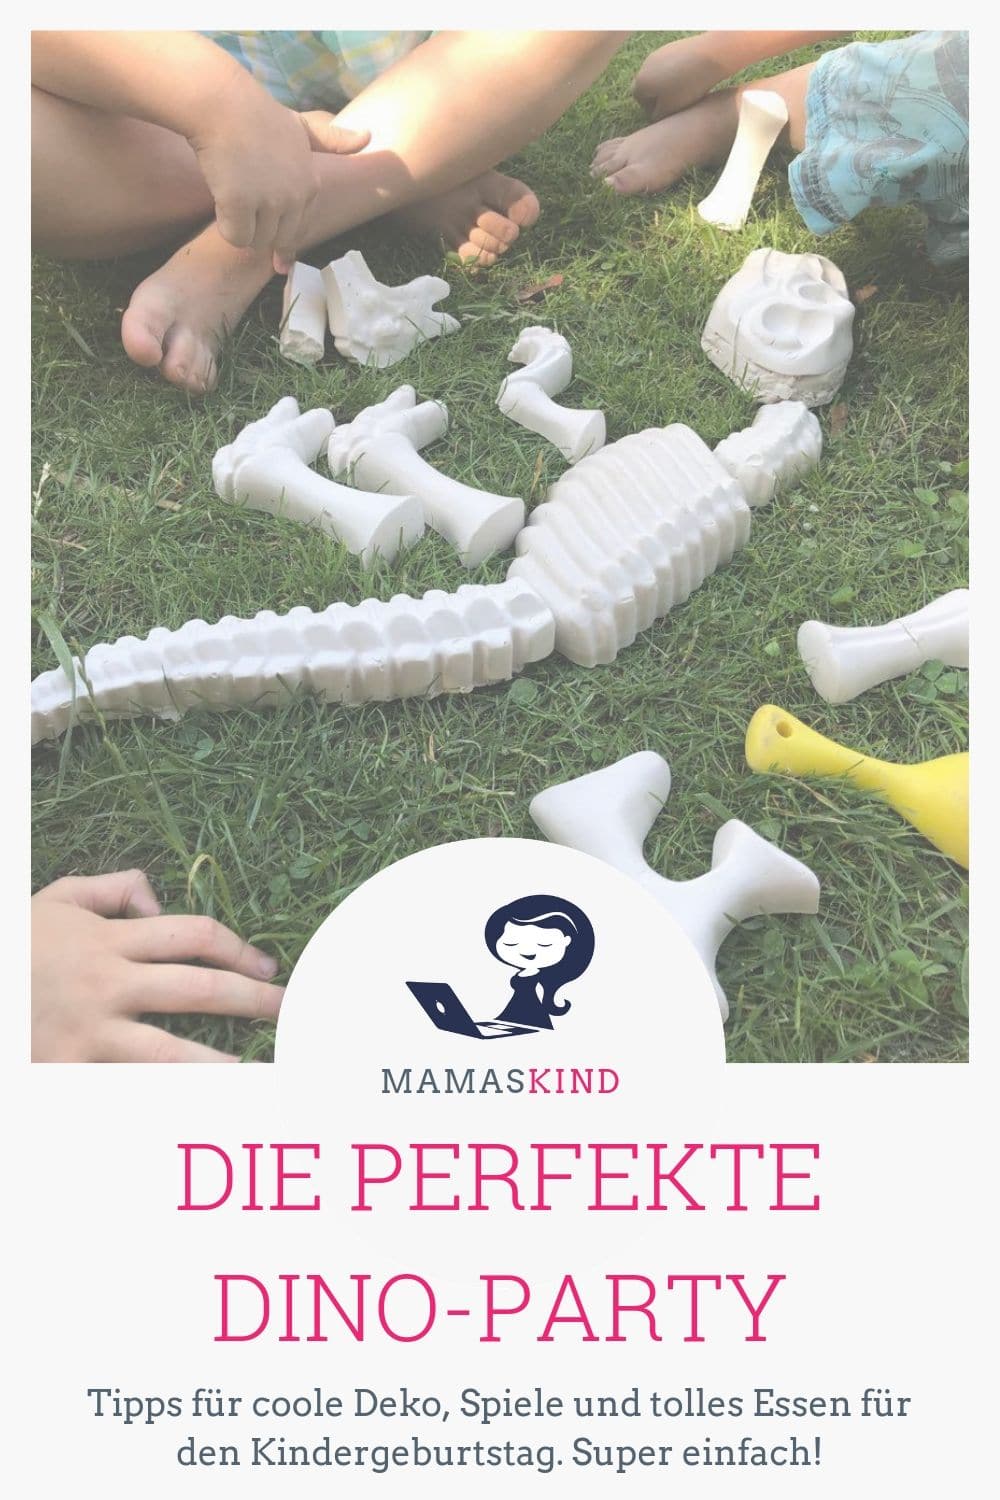 Die perfekte Dino-Party: wir bastelten Deko, planten Spiele und bereiteten cooles Essen zu! - Mehr Infos und Inspiration auf Mamaskind.de